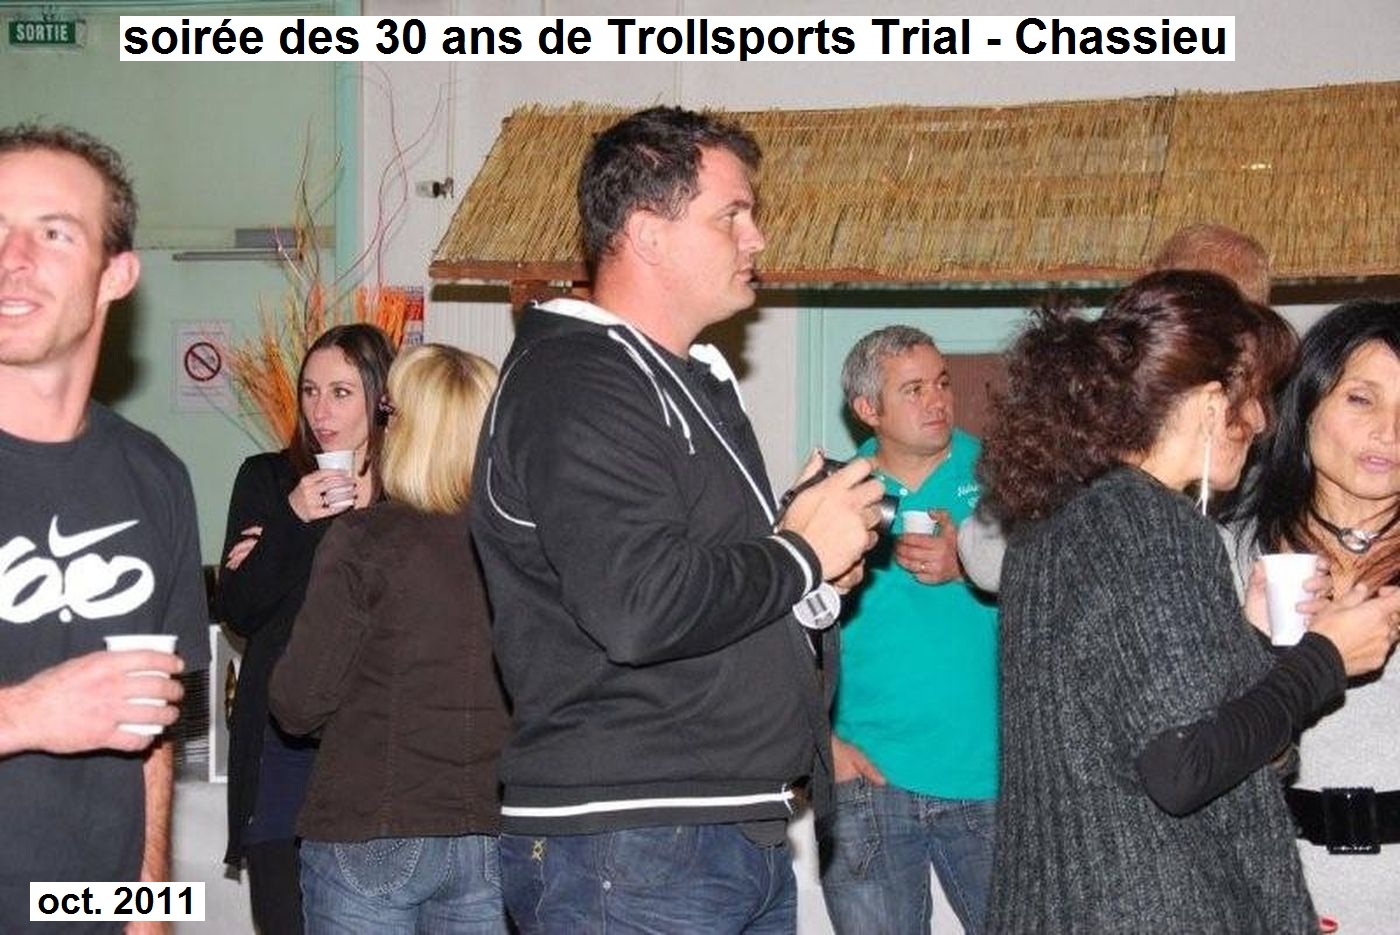 anniversaire/img/2011 10 anniv 30 ans trollsports trial D7.jpg